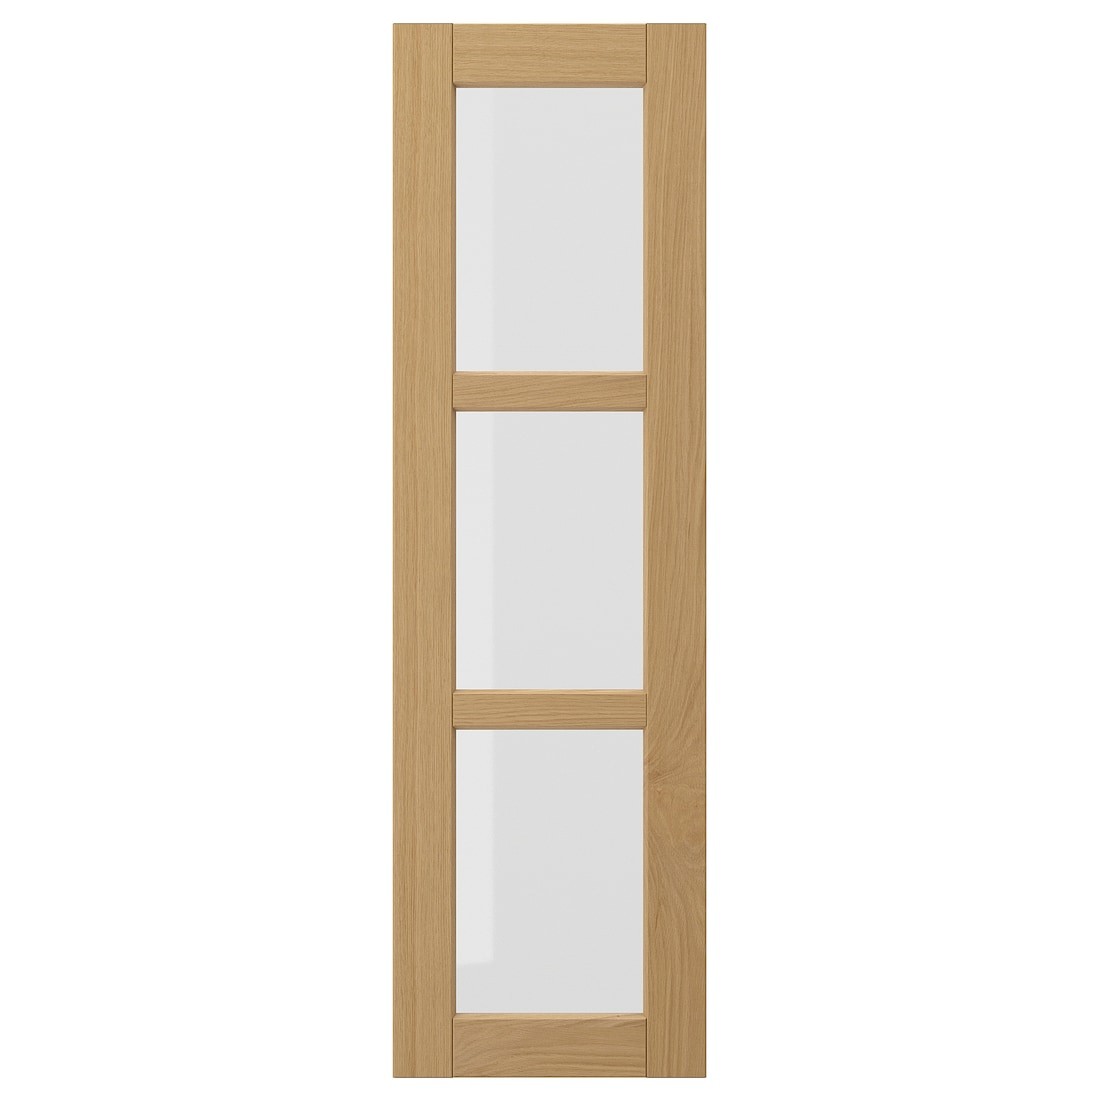 FORSBACKA Стеклянная дверь, дуб, 30x100 см